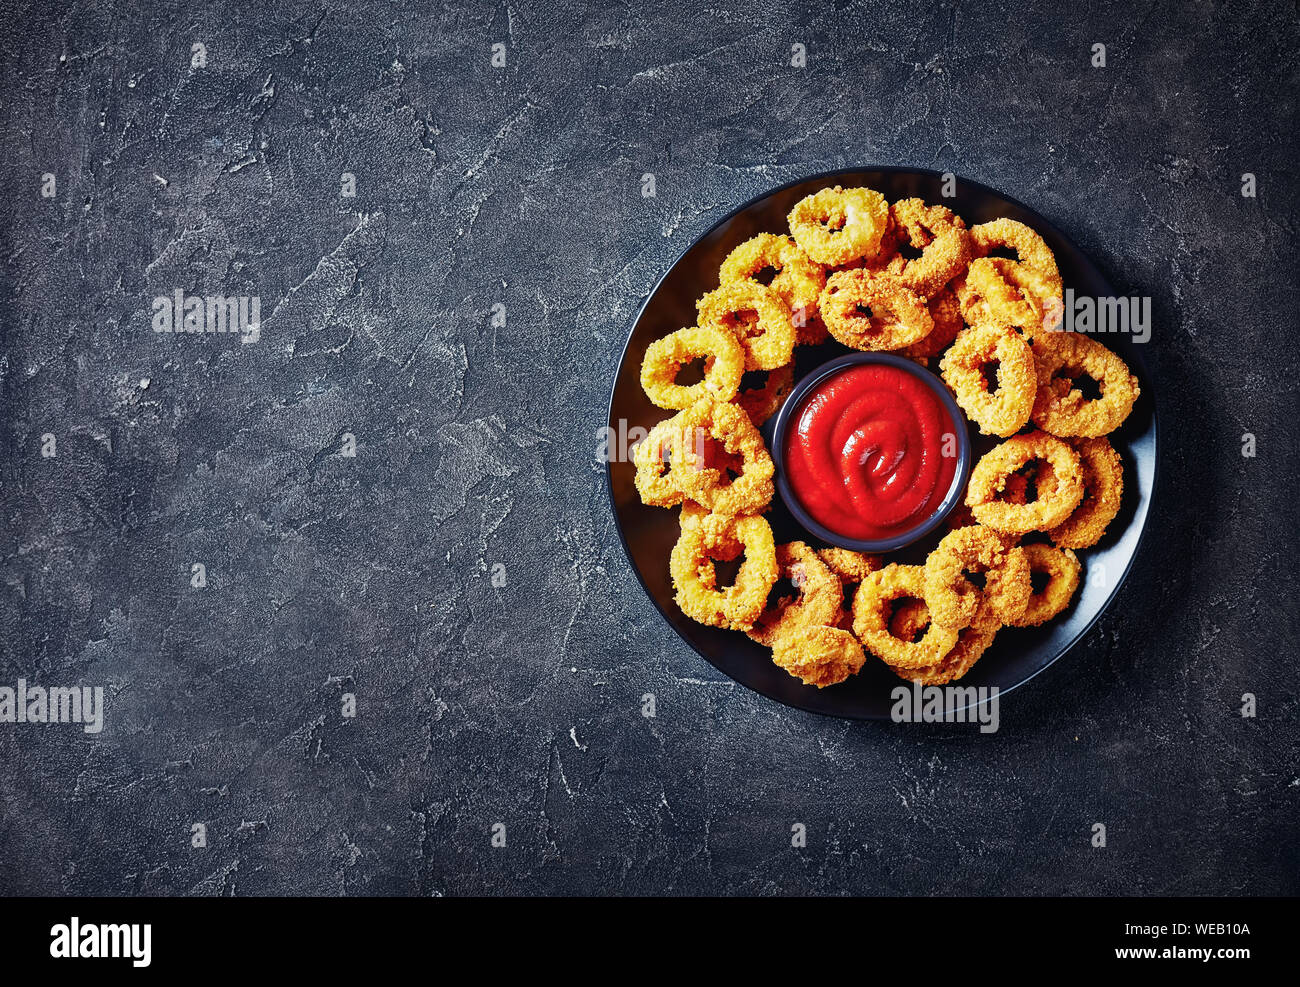 Croccanti anelli di calamari, fritte panate anelli di totano servito con salsa di pomodoro su una piastra nera su una tavola di cemento, vista orizzontale dal di sopra, libero Foto Stock